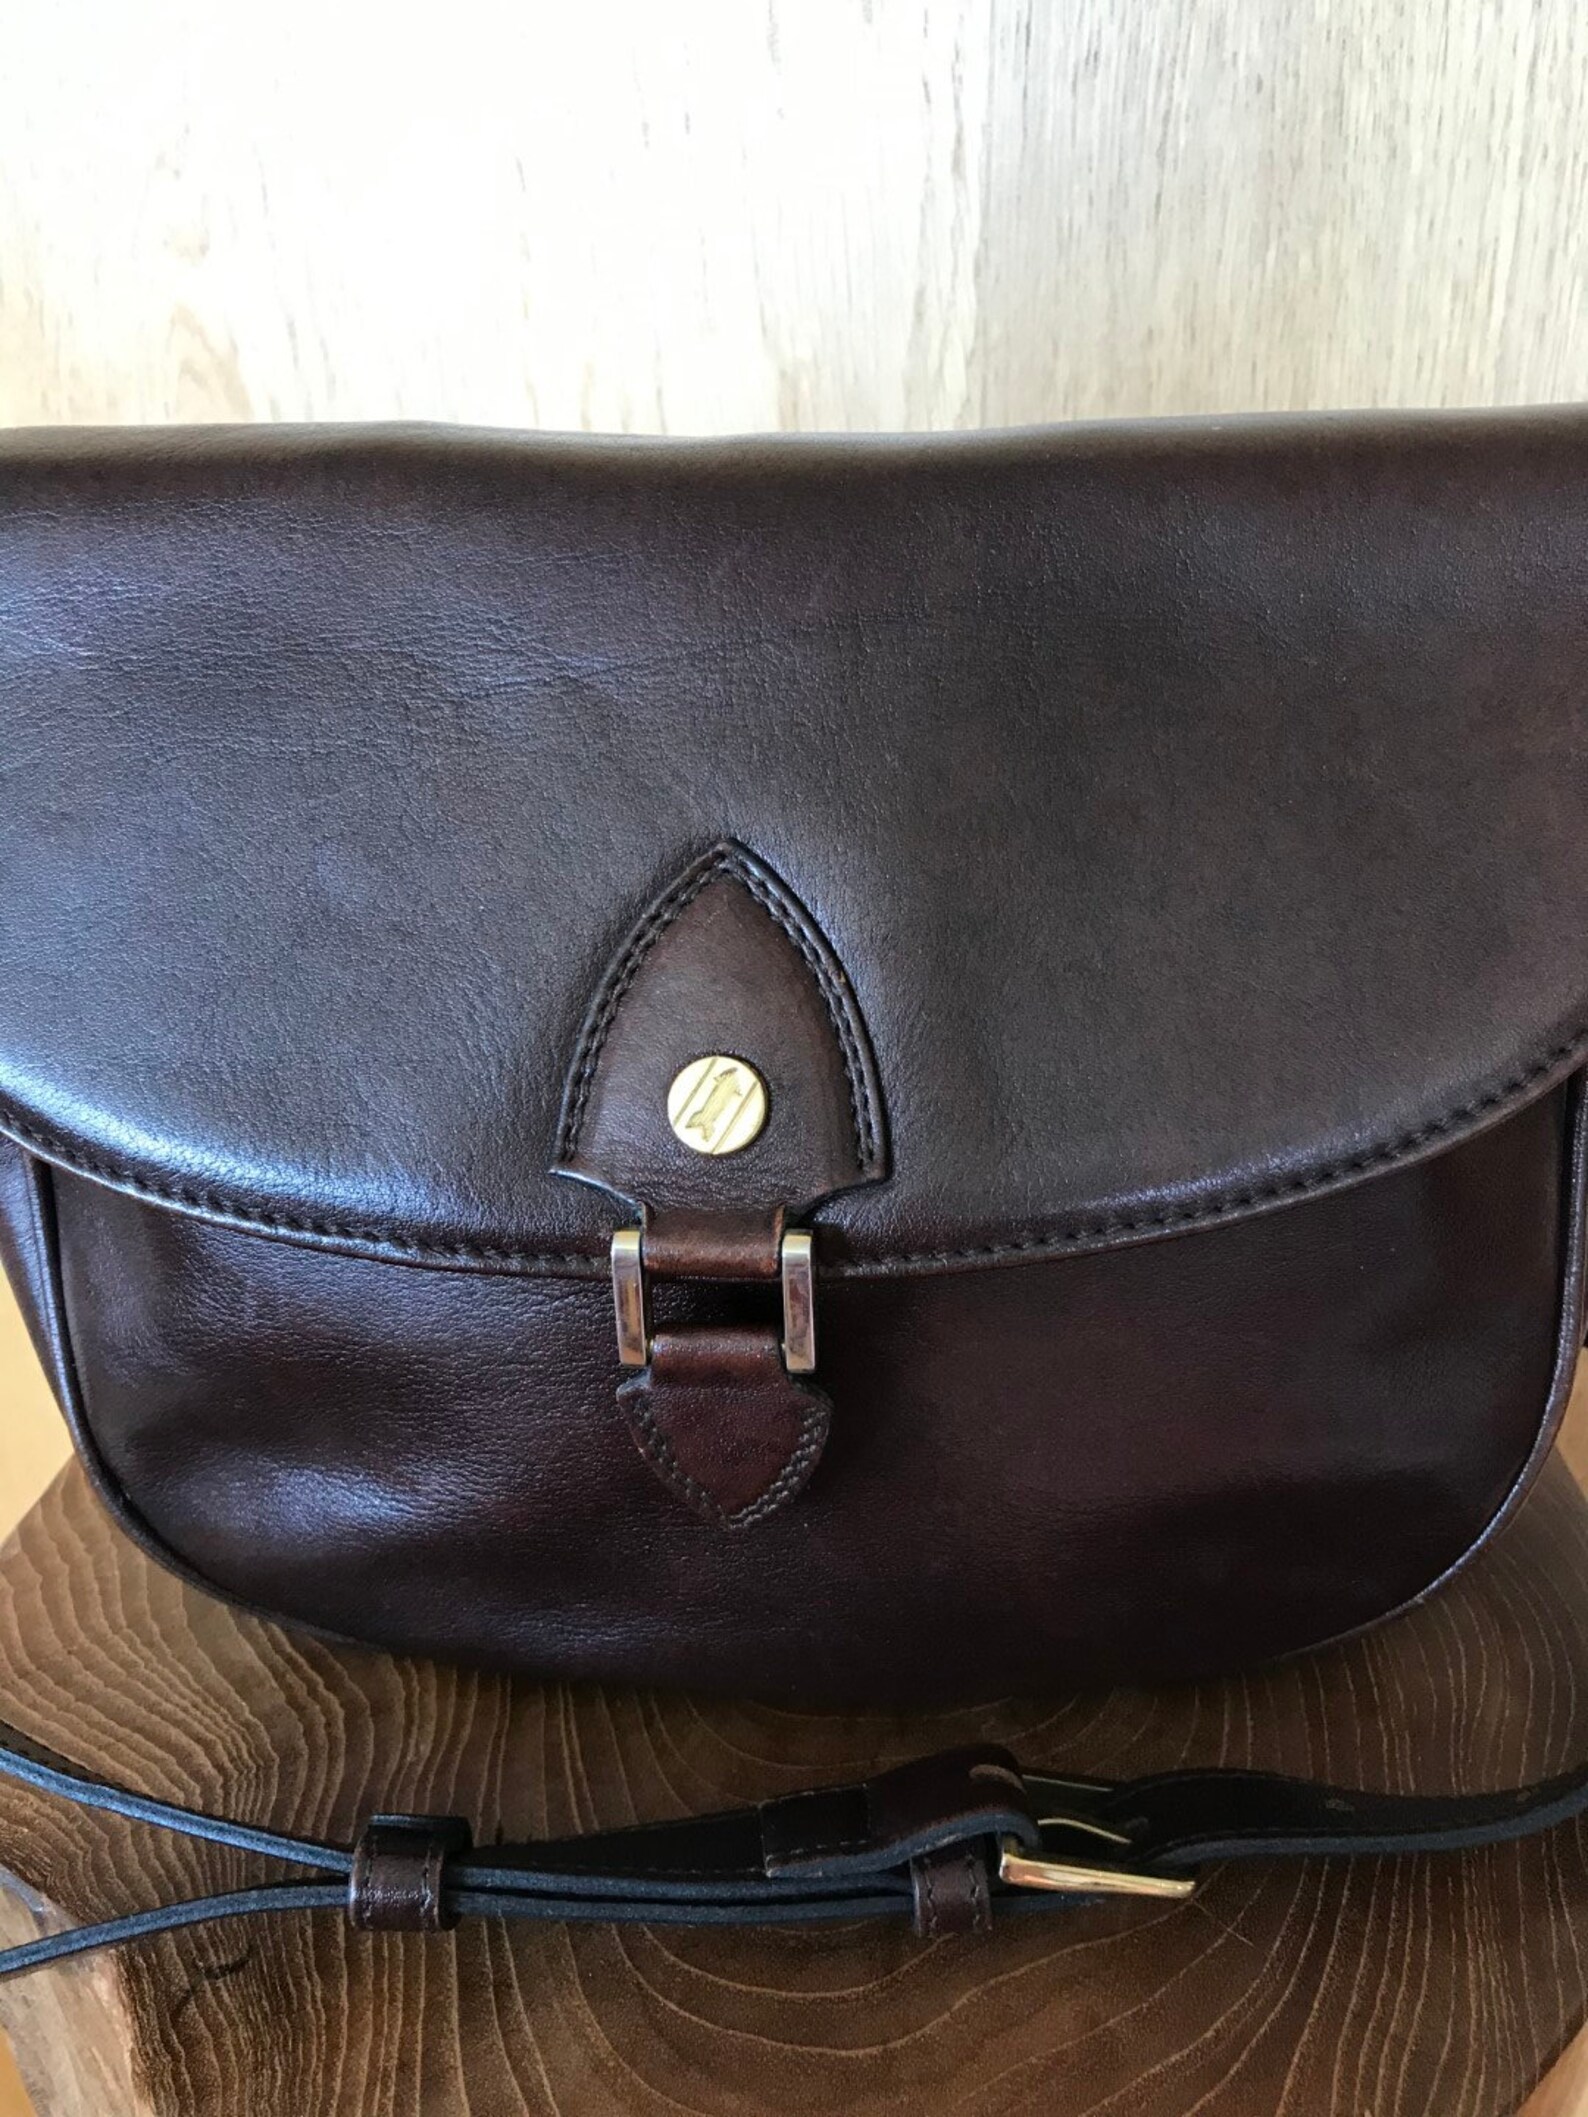 Goldpfeil Shoulder Bag Made of Dark Brown Leather - Etsy